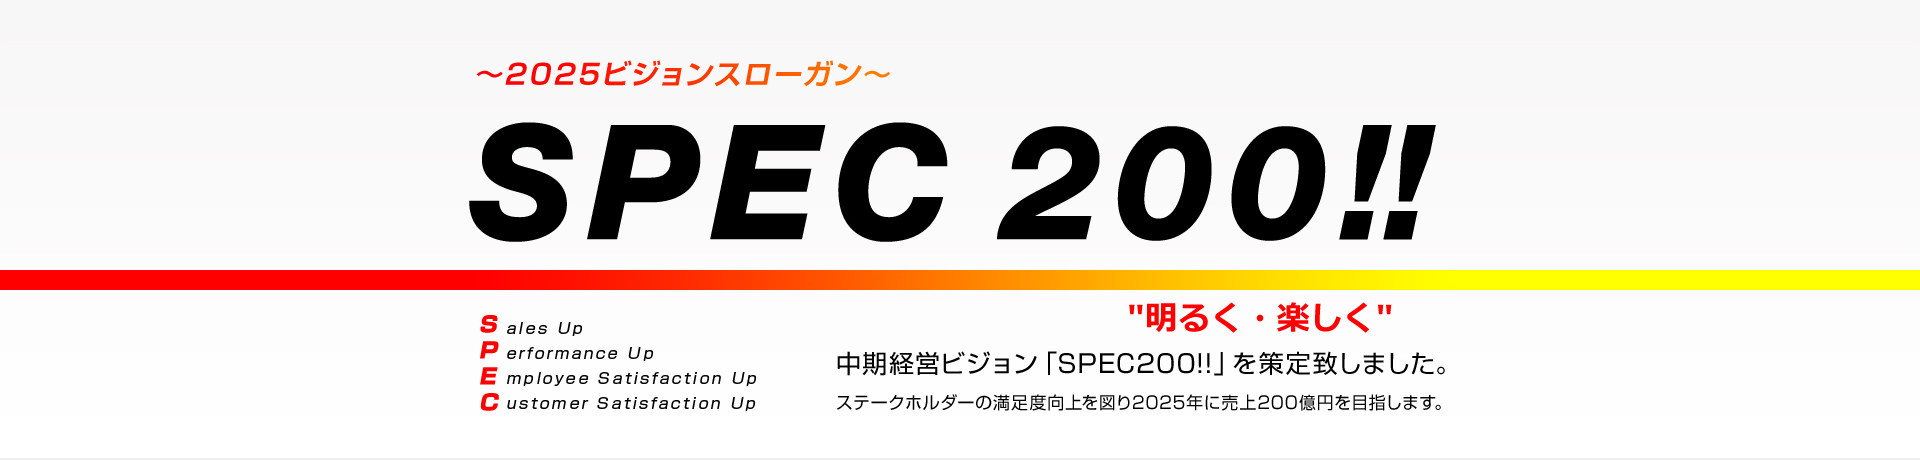 2025ビジョンスローガン SPEC 200!!